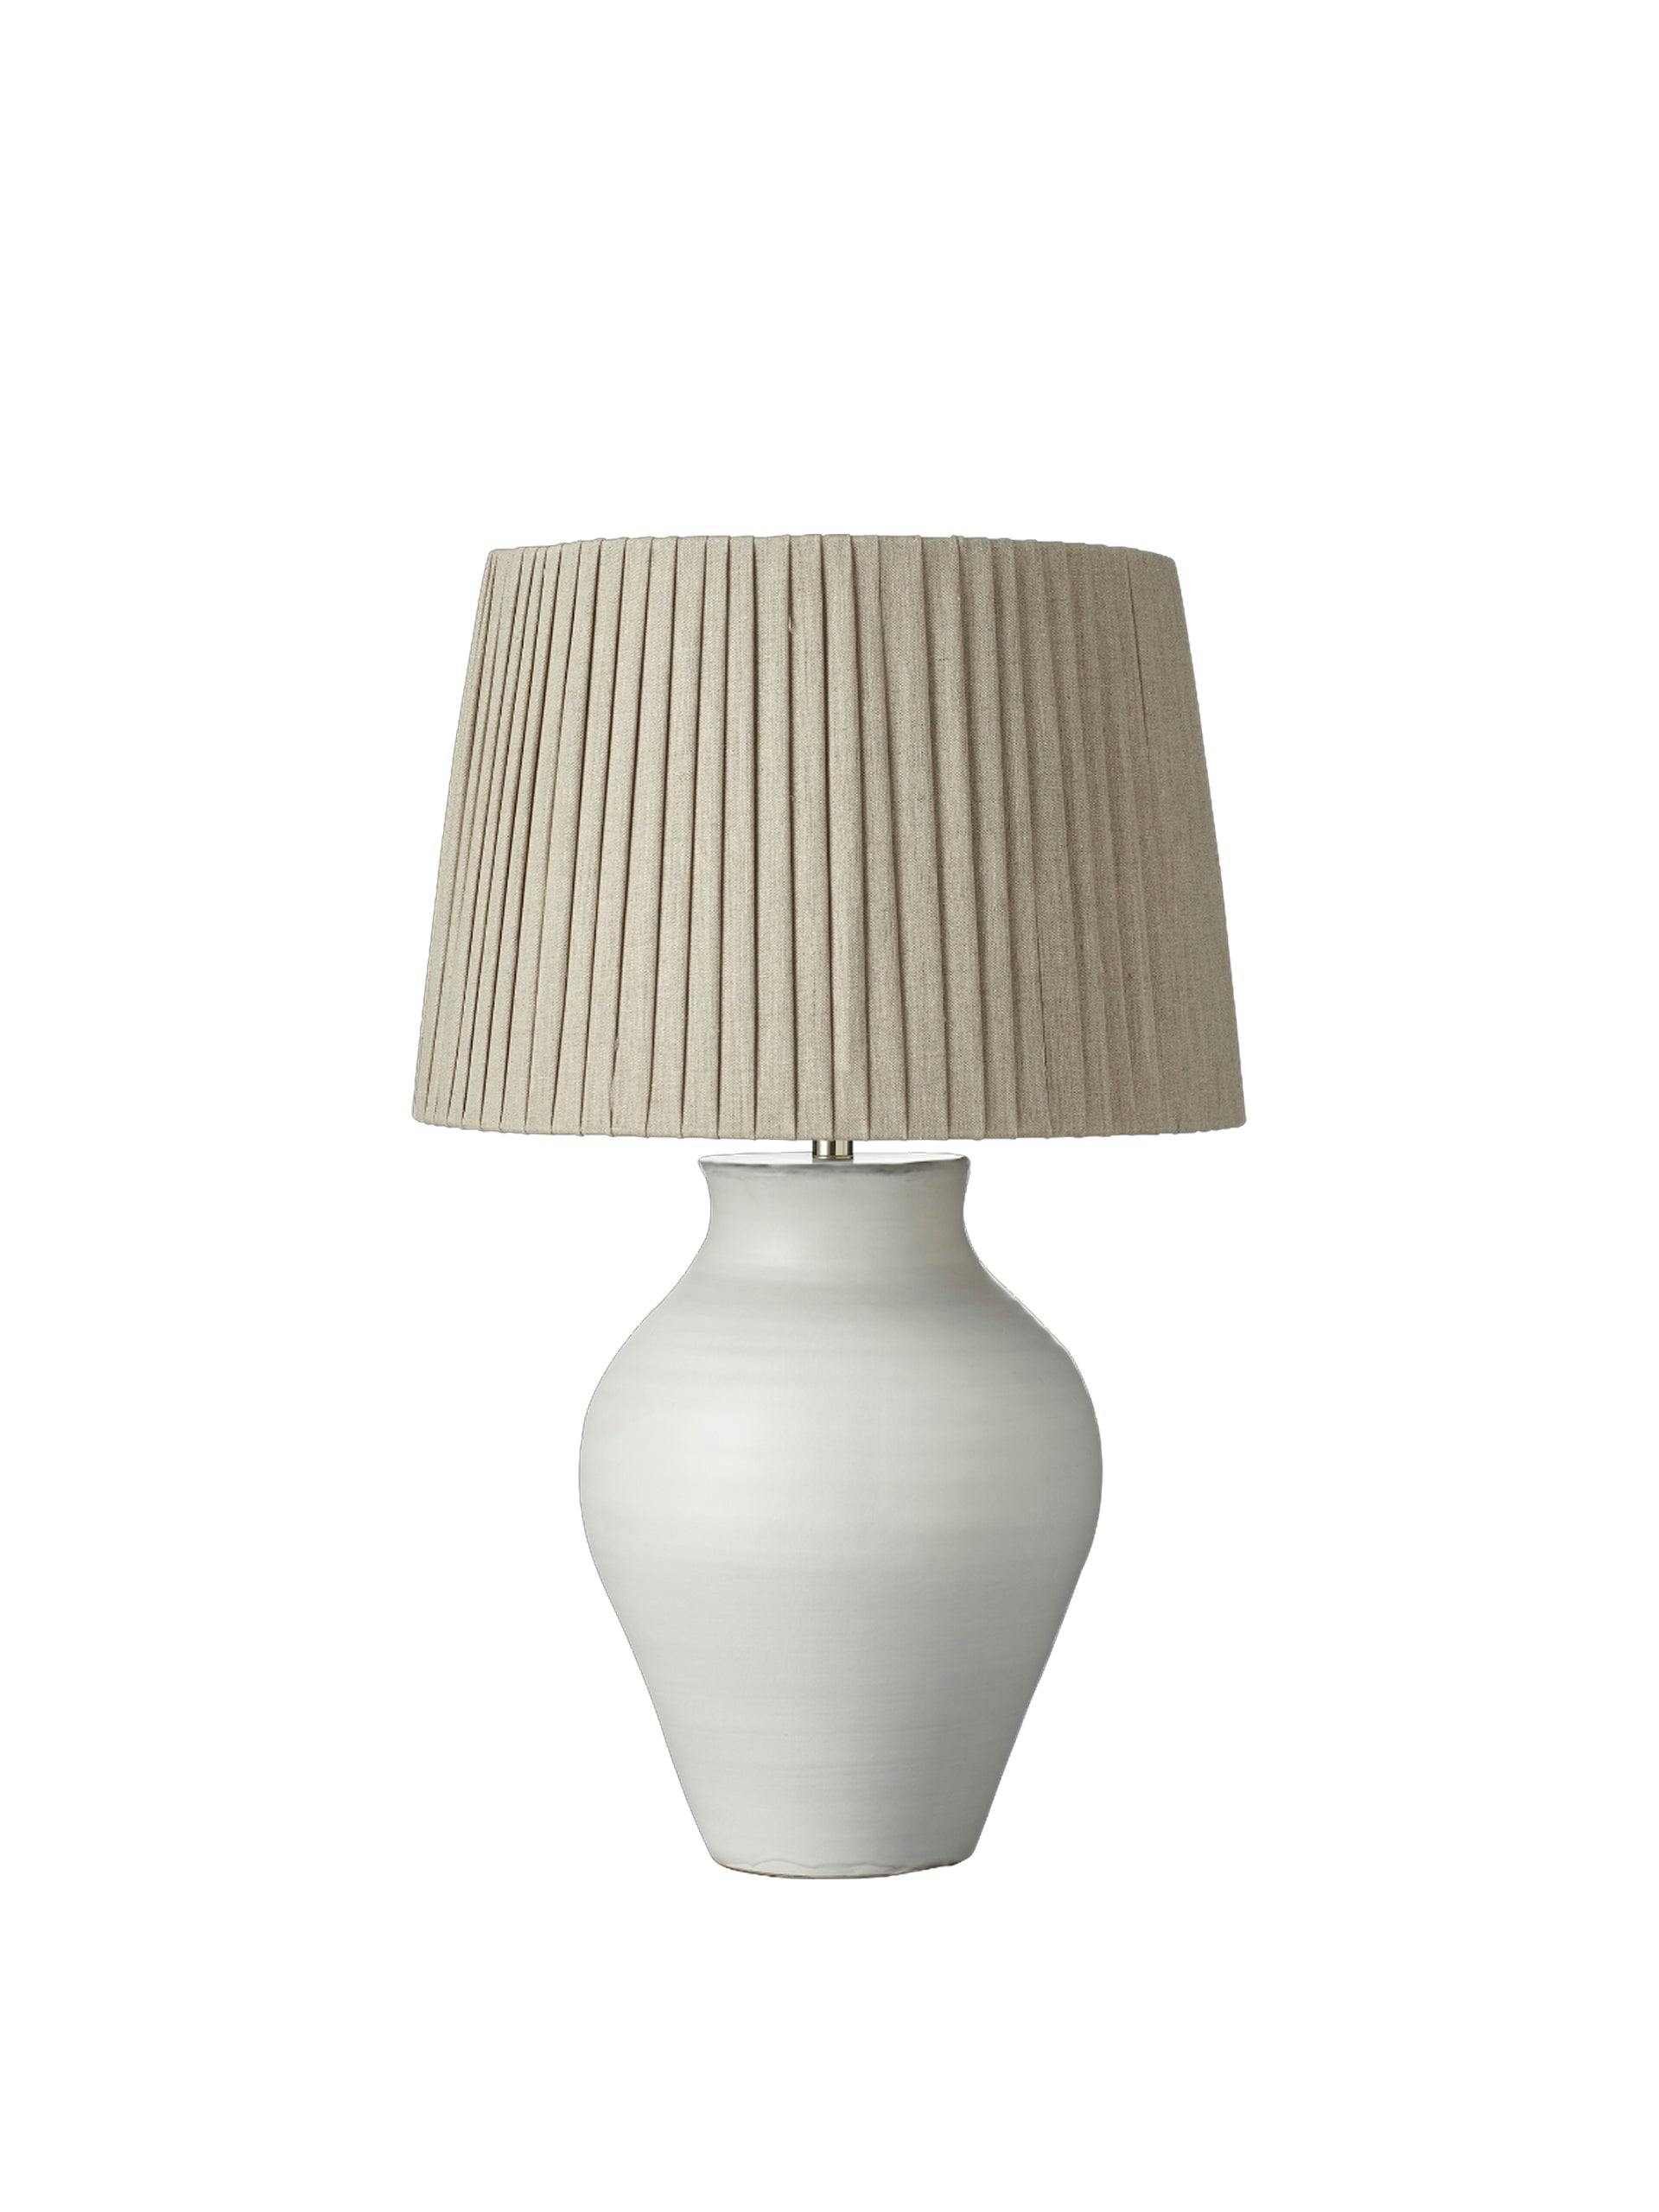 White terracotta table lamp